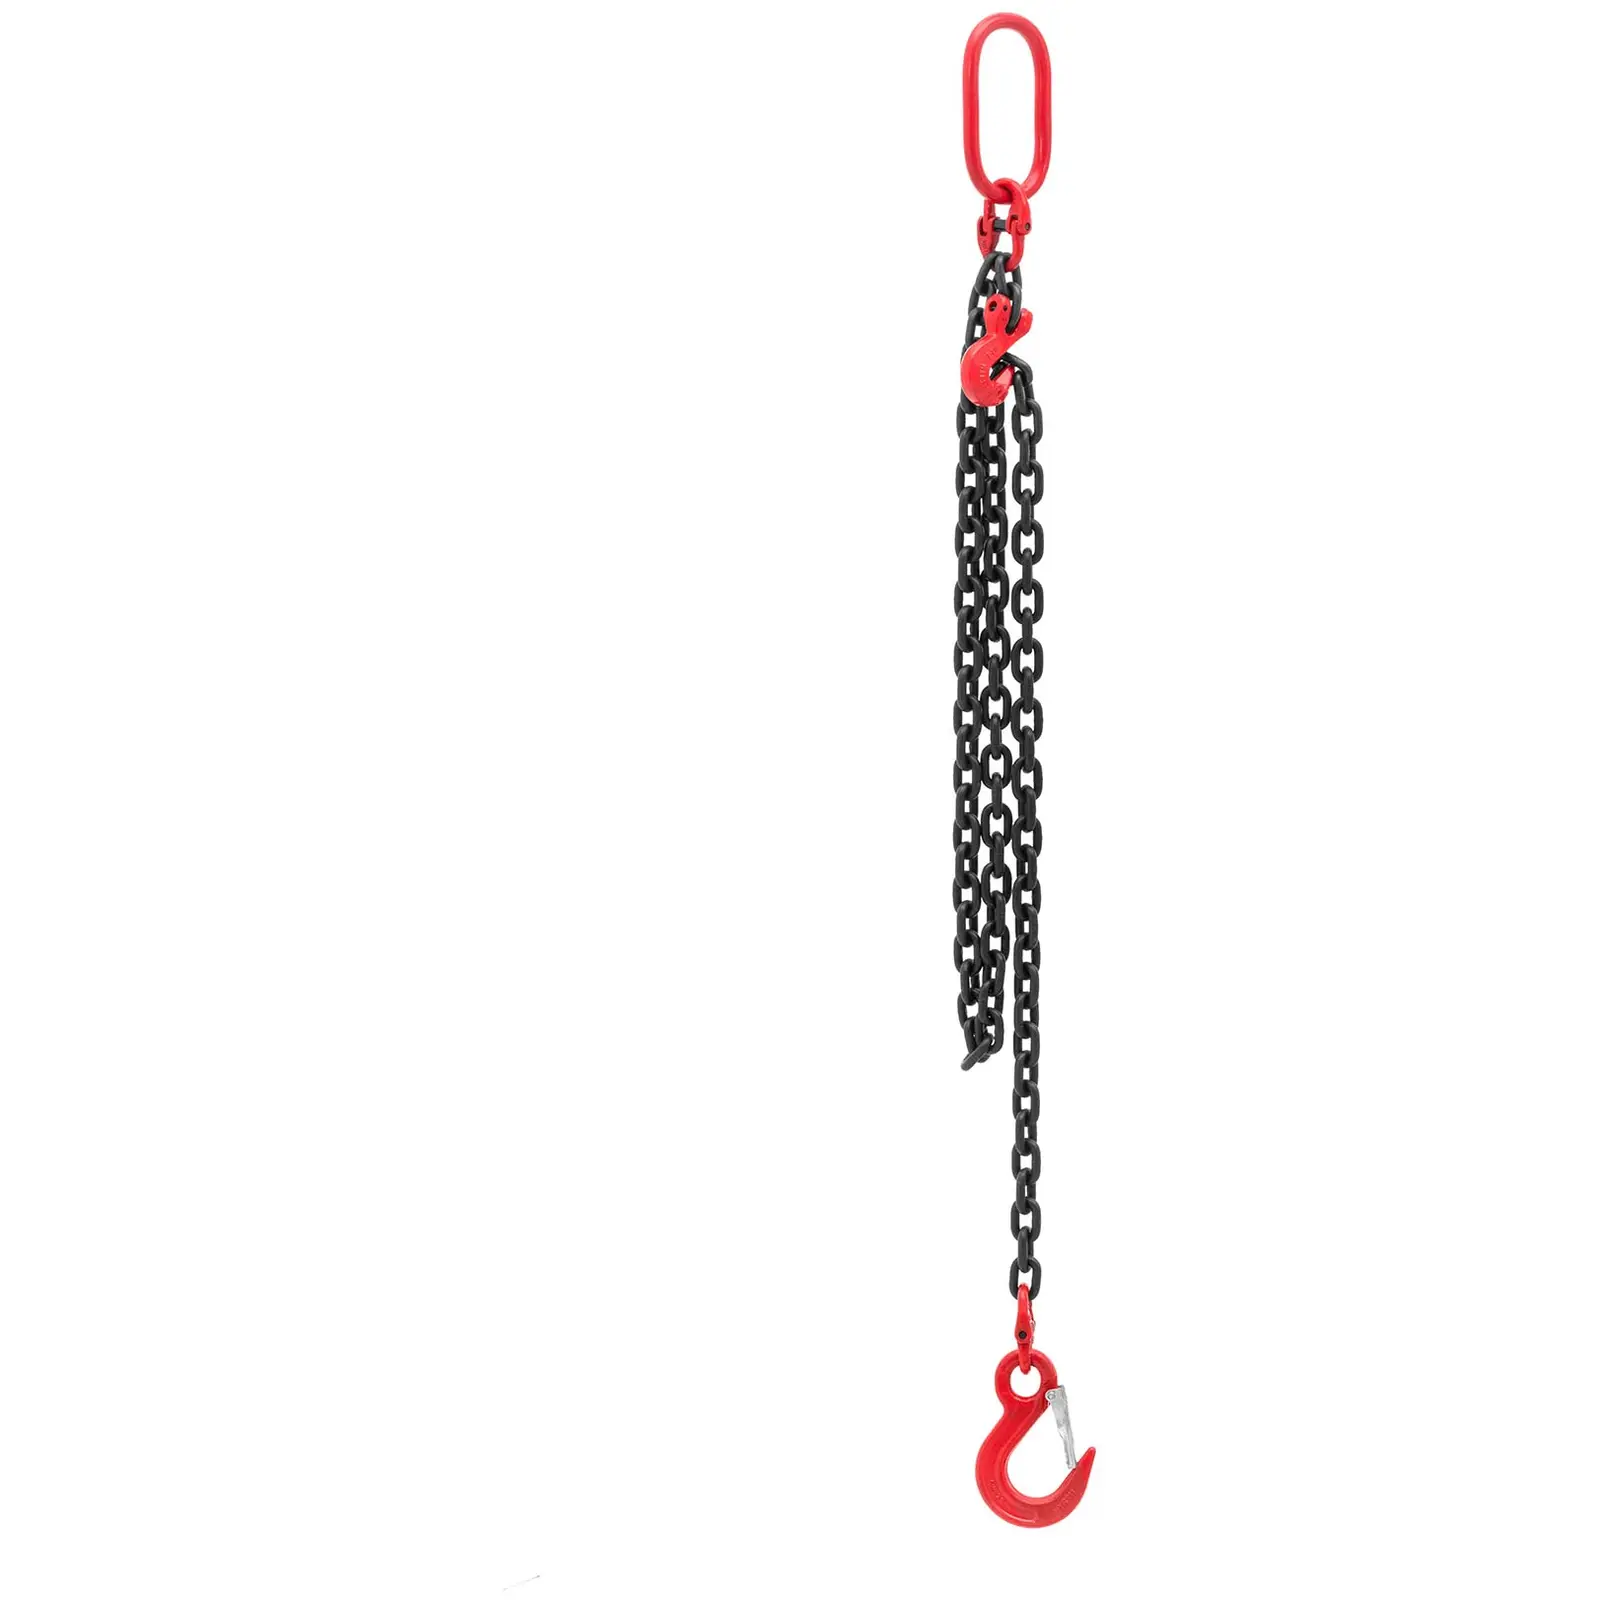 Chaîne de levage - 2000 kg - 2 m - noir/rouge - raccourcisseur de chaîne